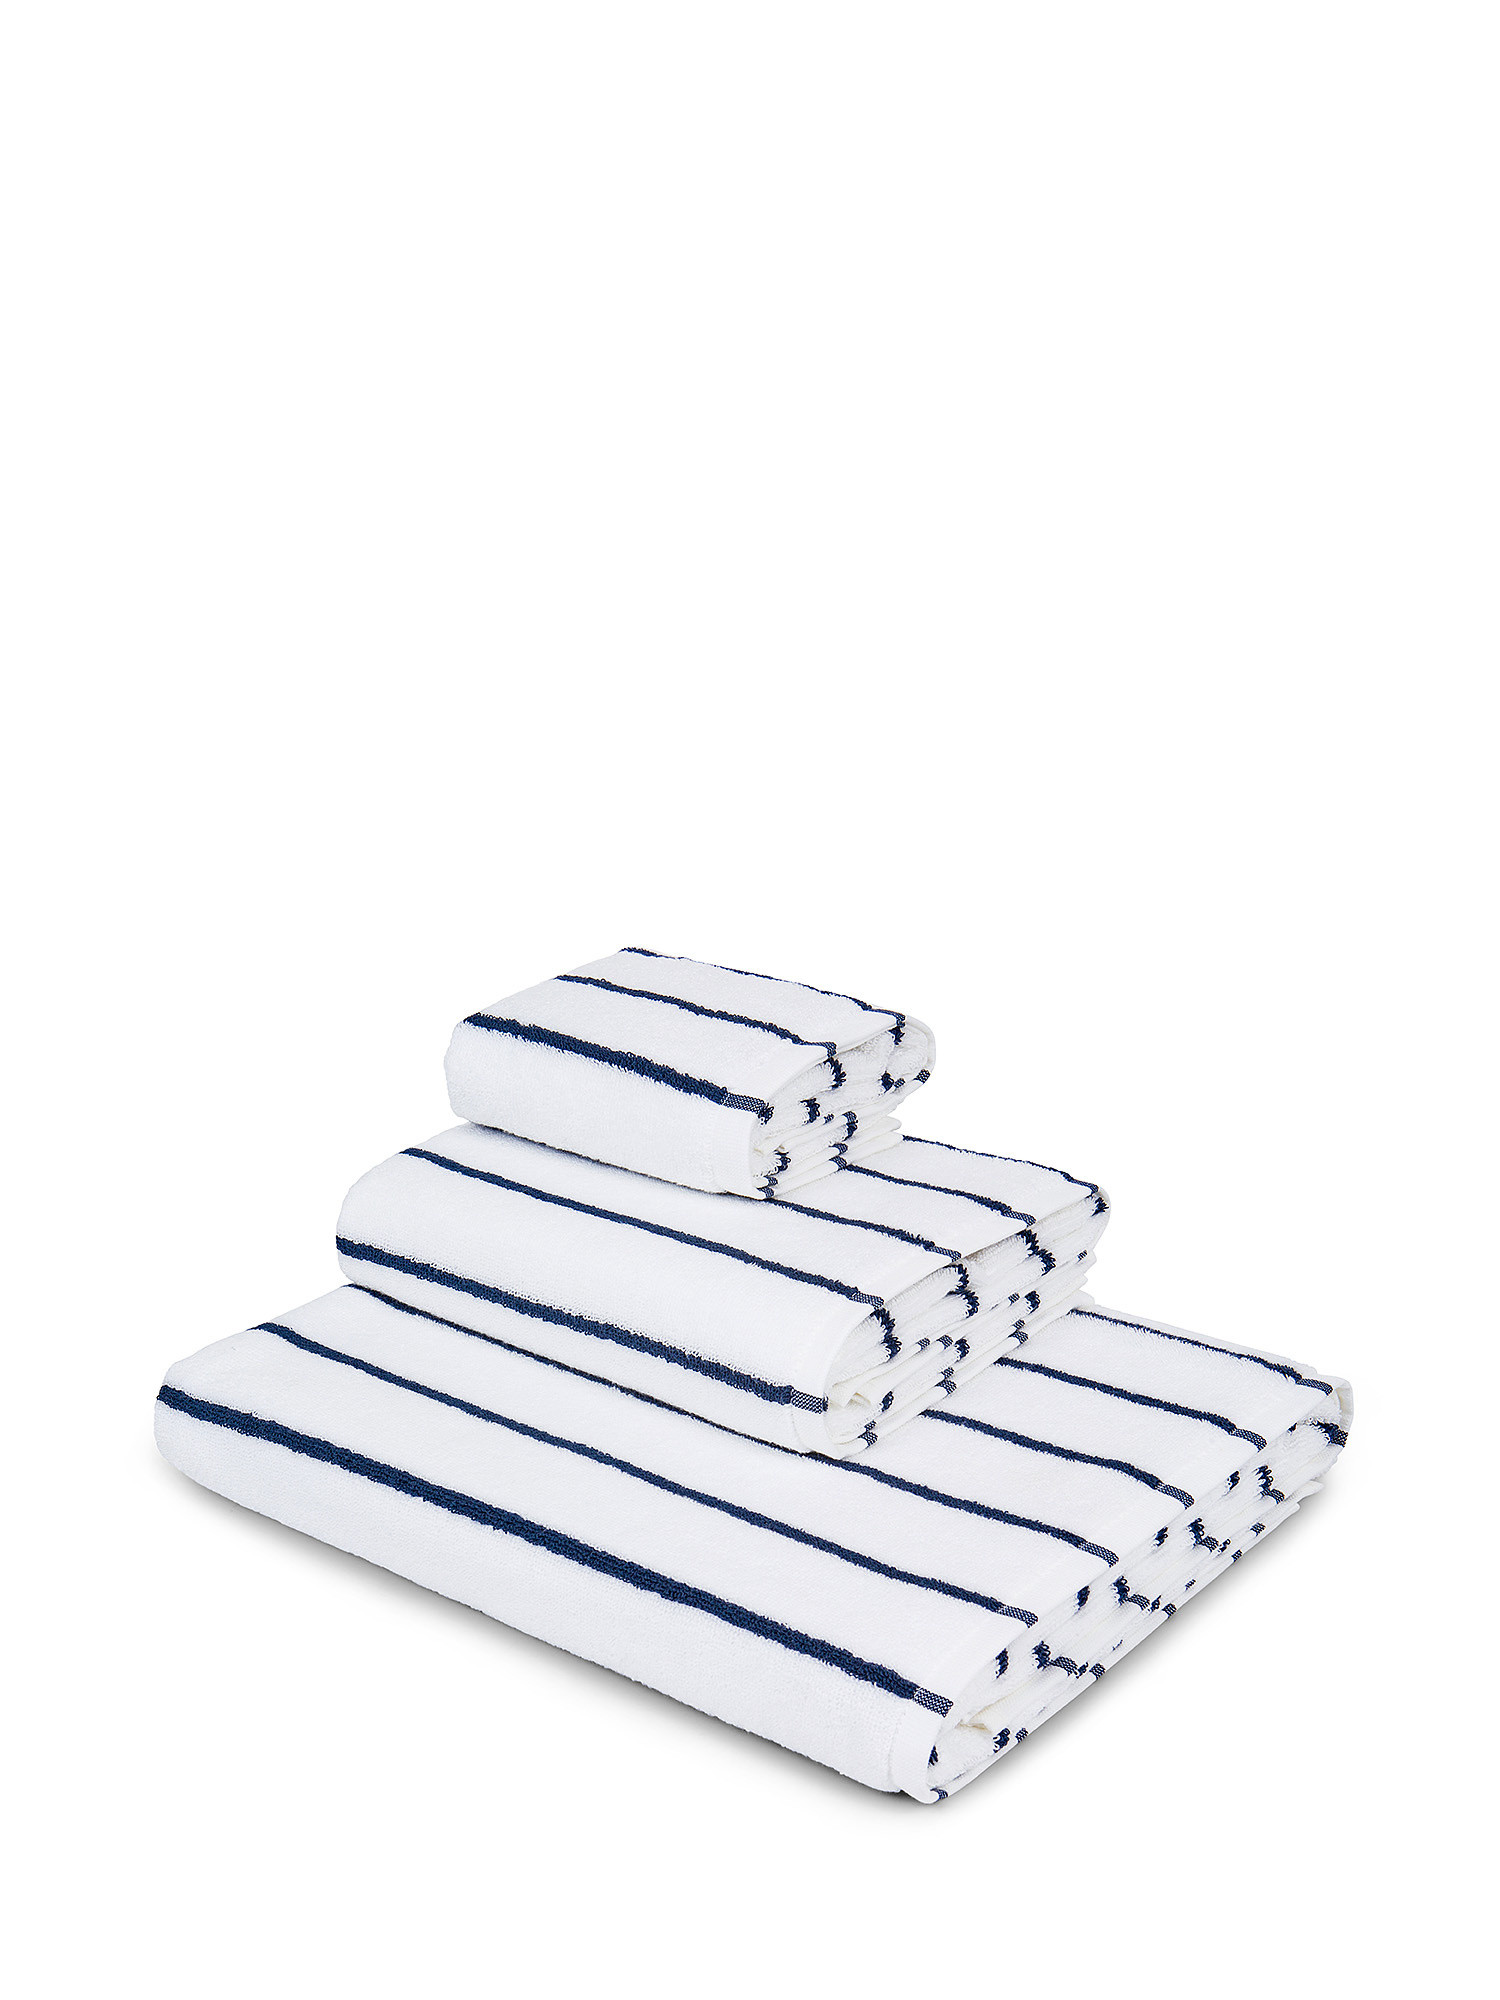 Asciugamano in spugna  di puro cotone., Blu scuro, large image number 0